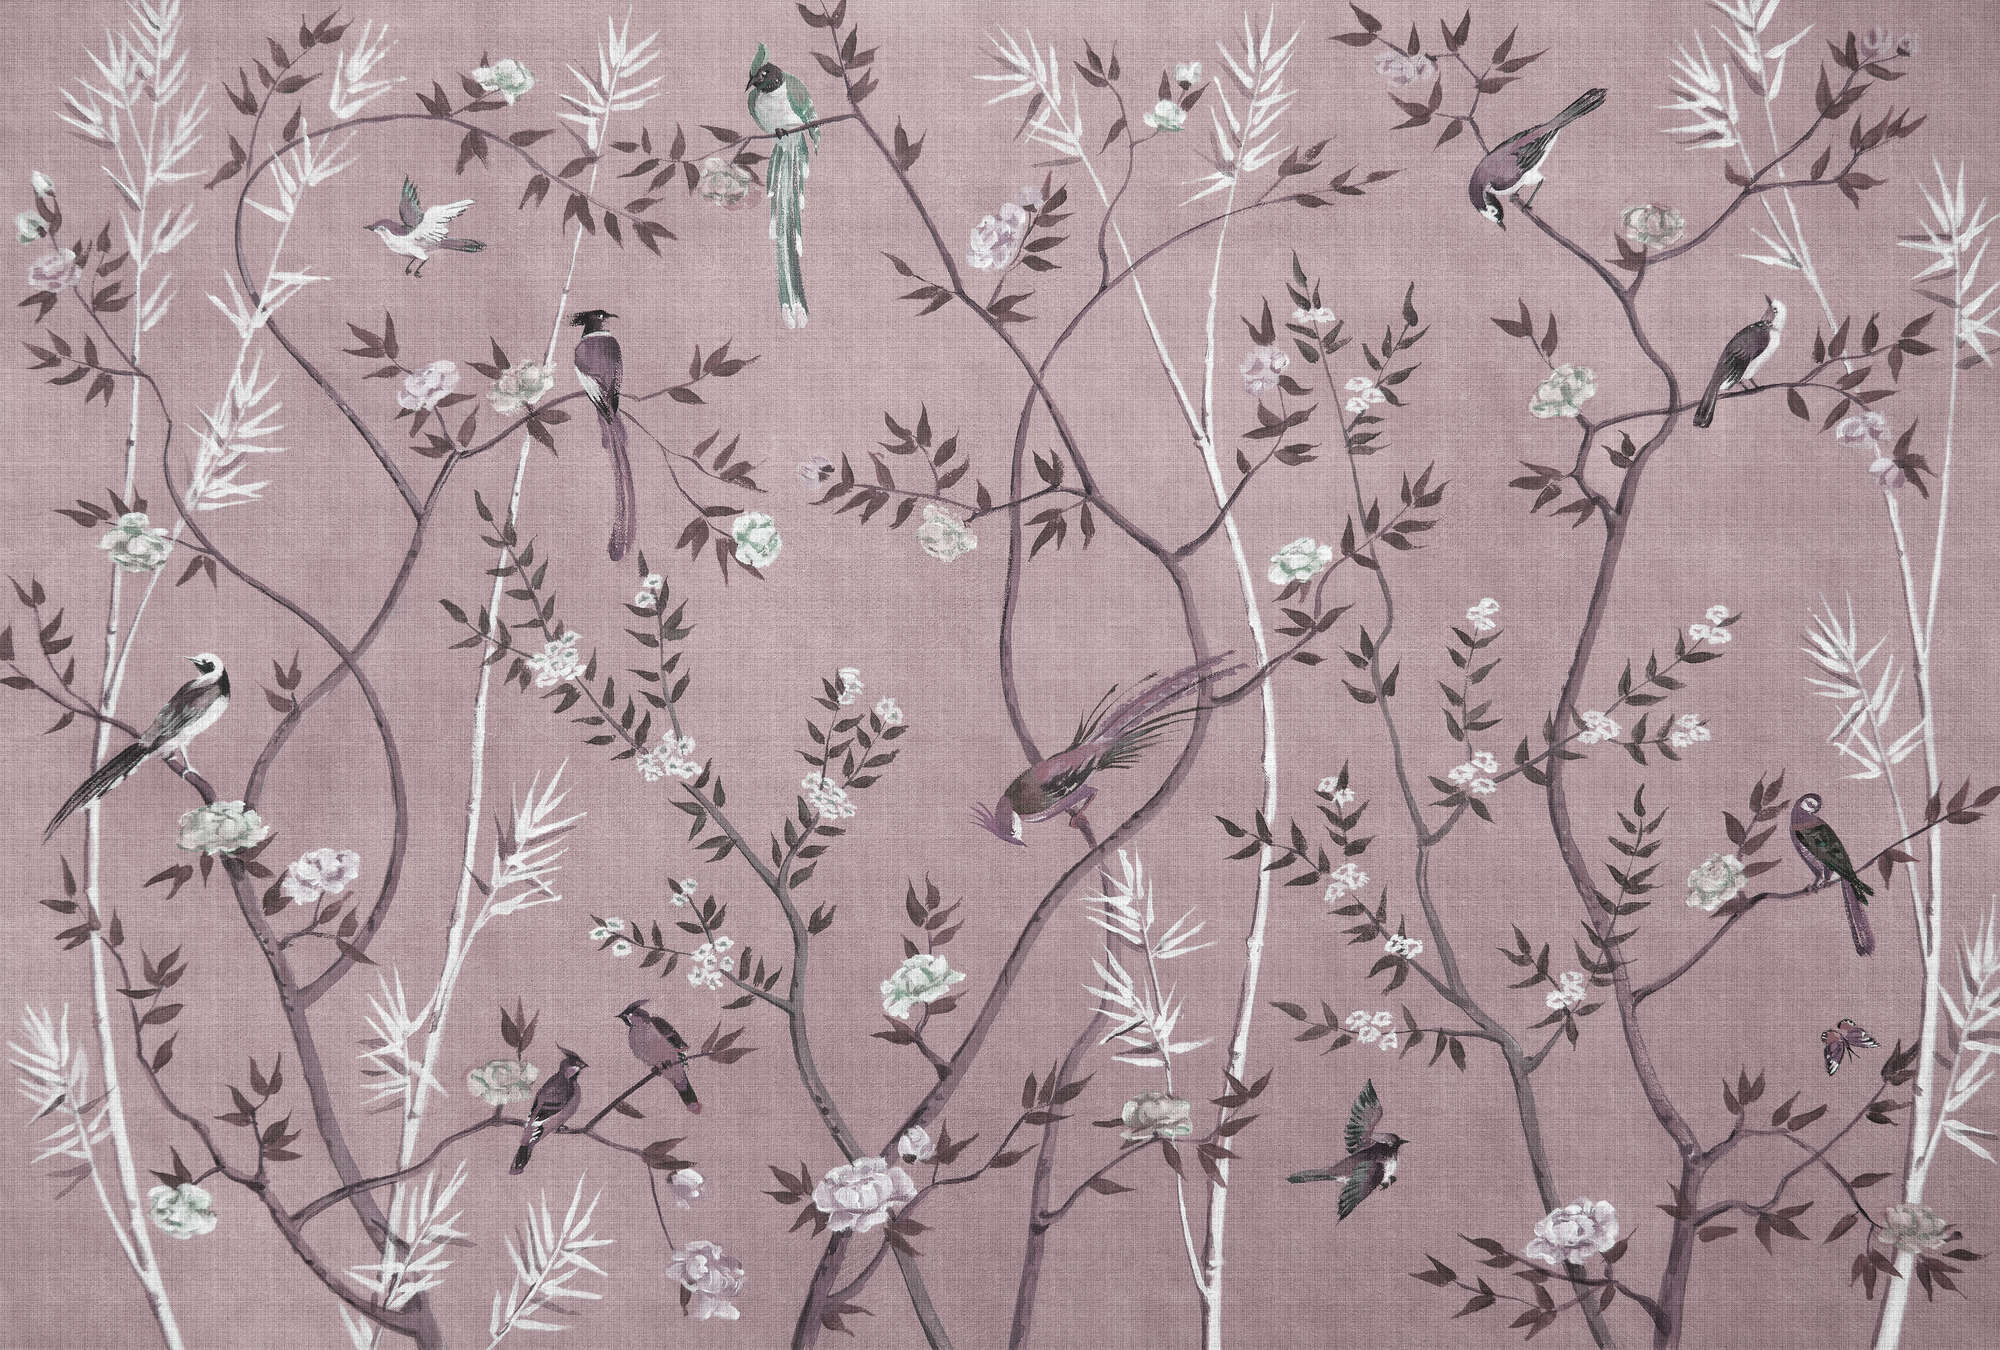             Tea Room 3 - Papier peint panoramique Oiseaux & Fleurs Design en rose & blanc
        